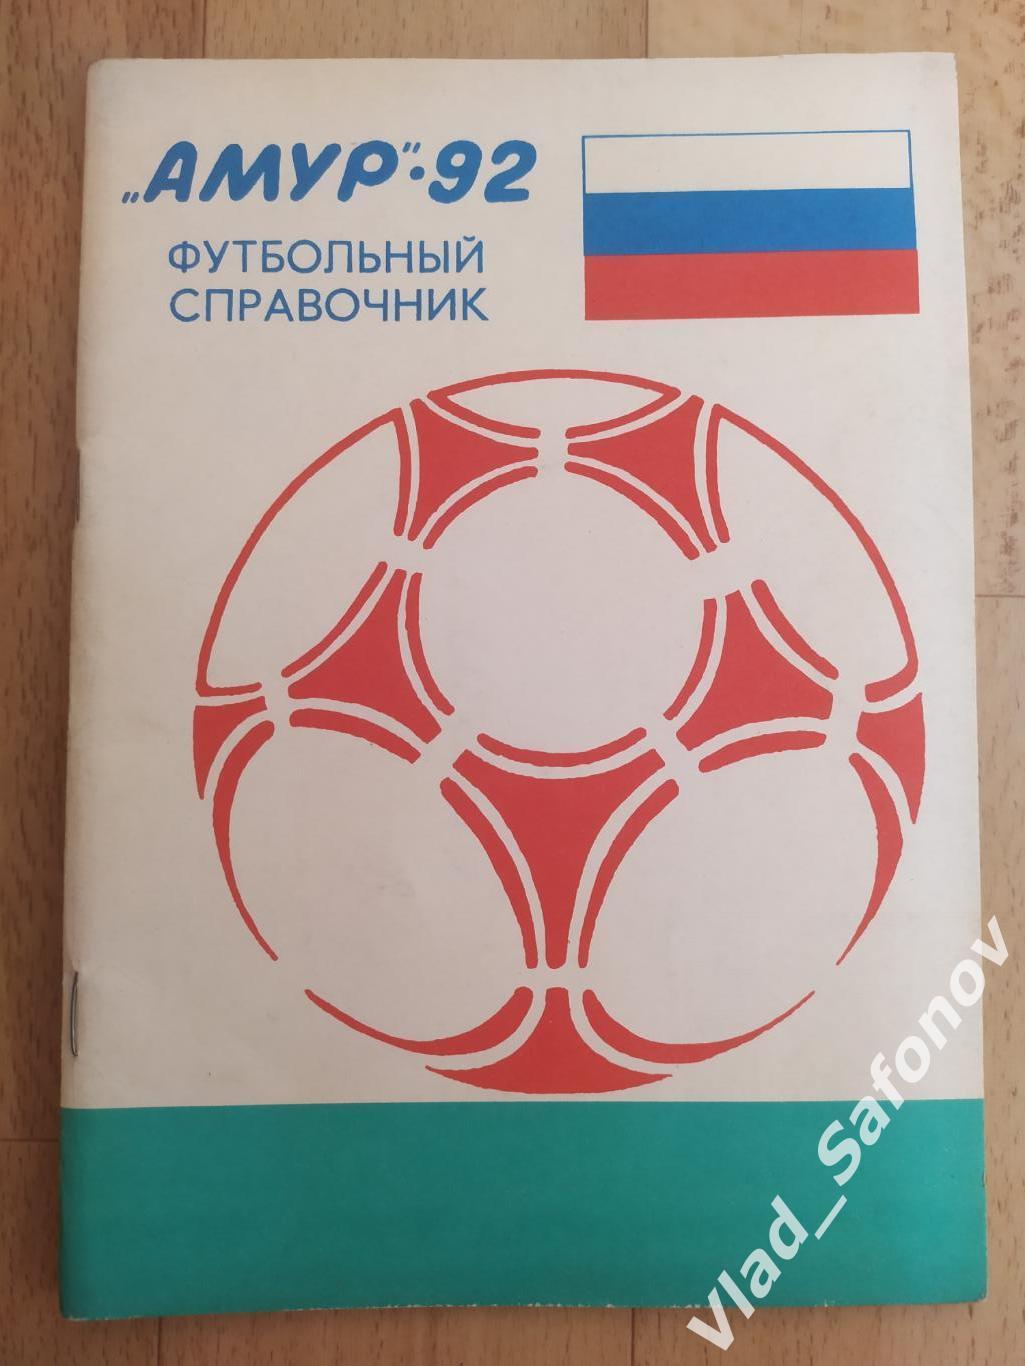 Календарь справочник. Амур(Благовещенск) 1992.